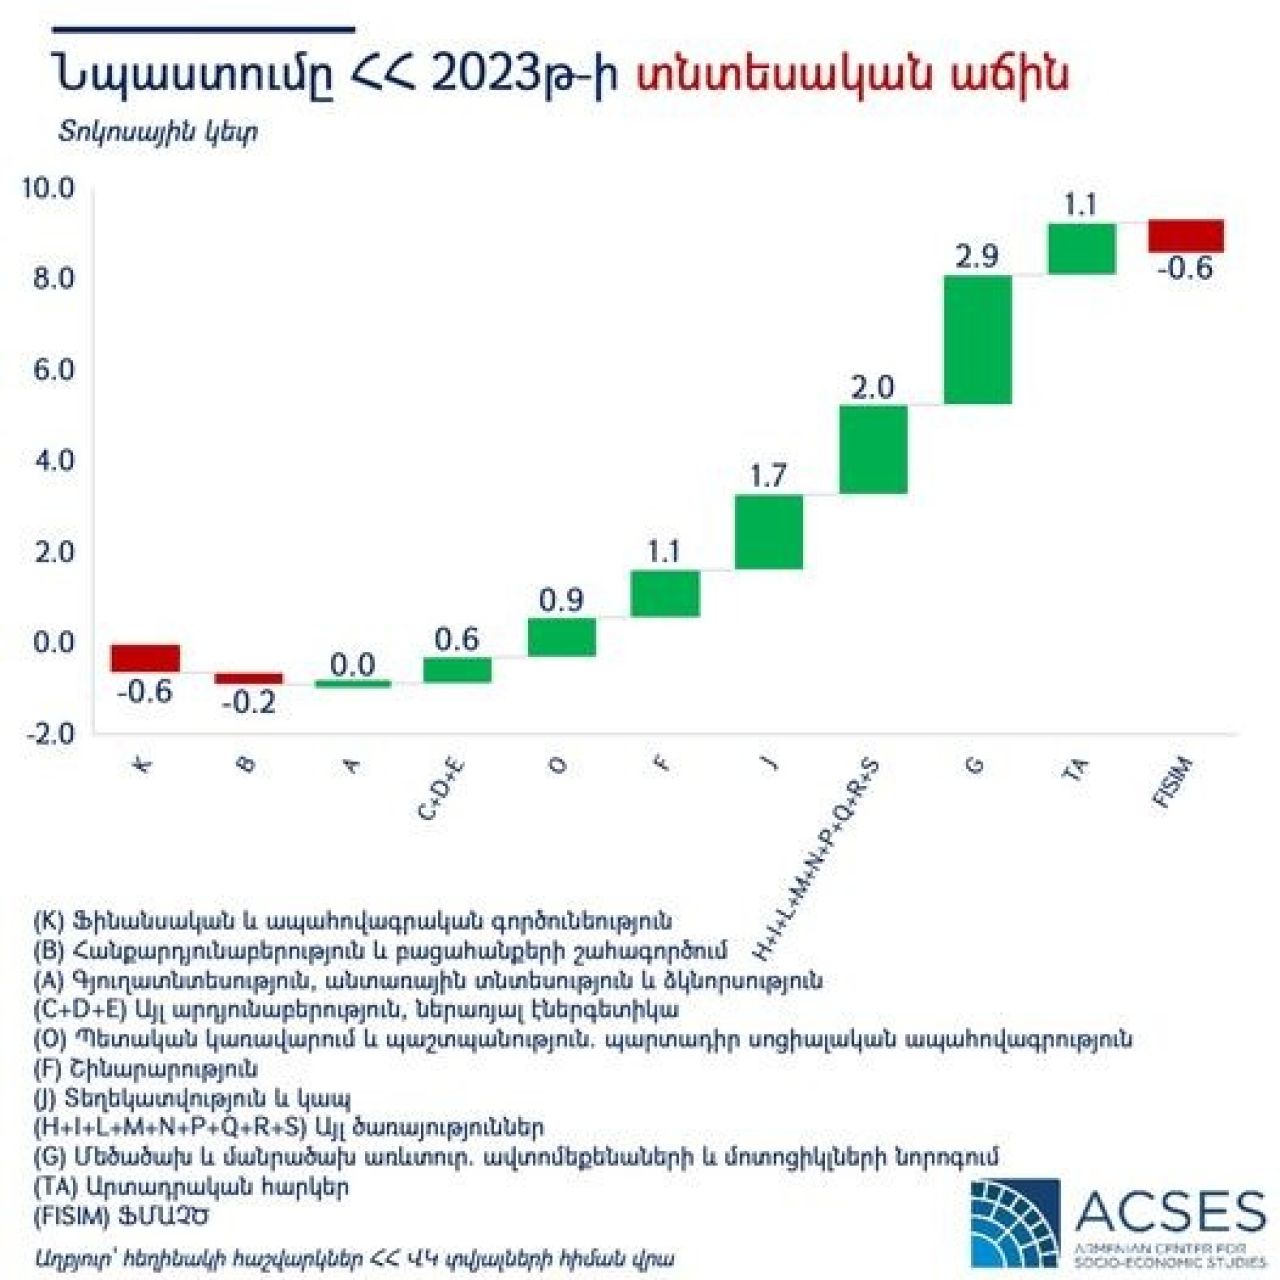 Հայաստանի տնտեսական աճը 2023թ-ին